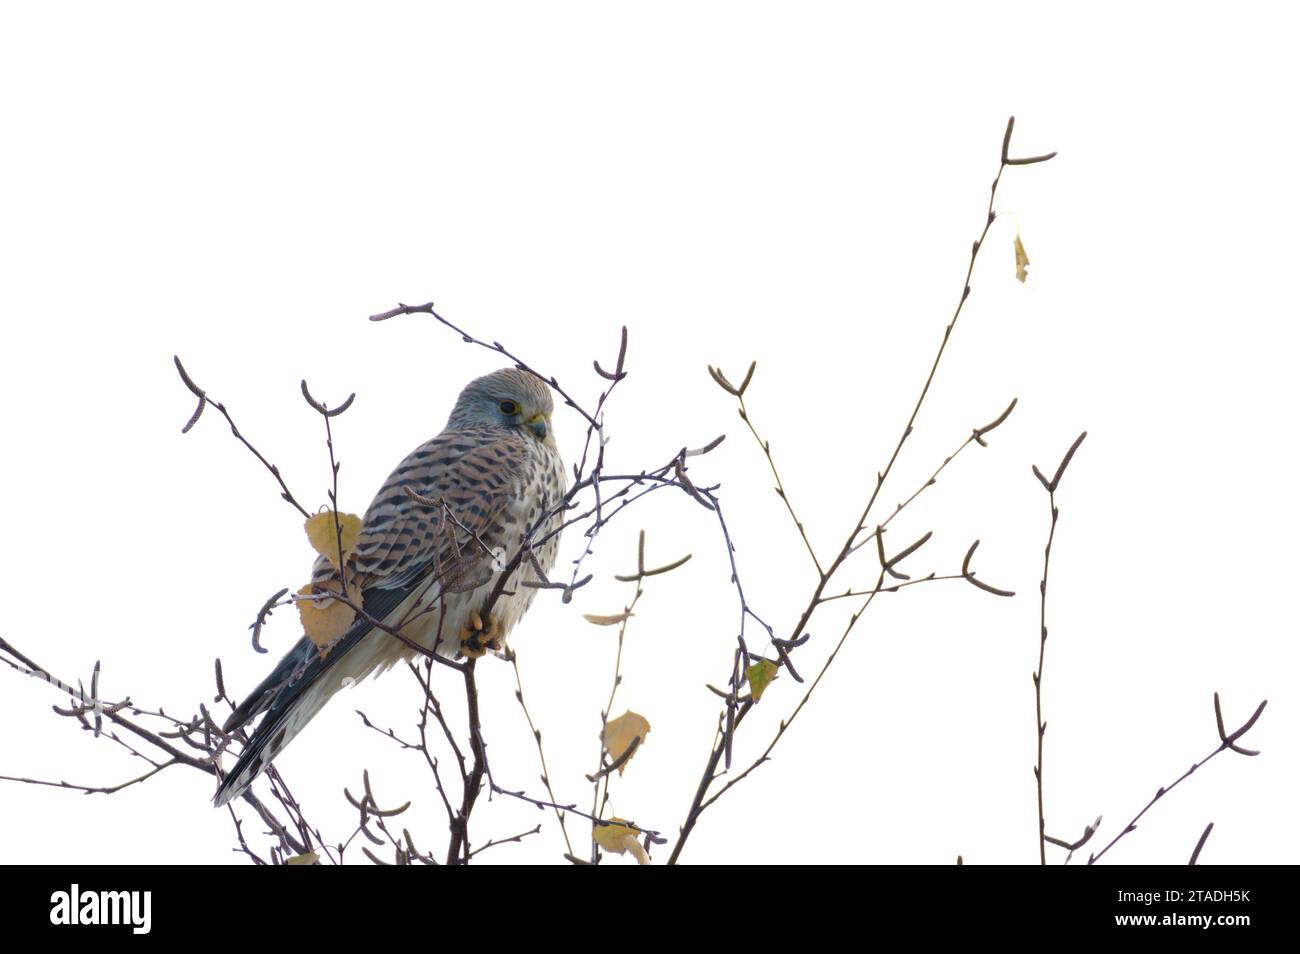 Falco Tinnunkulus, auch bekannt als gewöhnlicher Turmfalke, sitzt im Winter auf dem Baum. Sehr schöner bunter Raubvogel, ziemlich häufig in Tschechien. Stockfoto